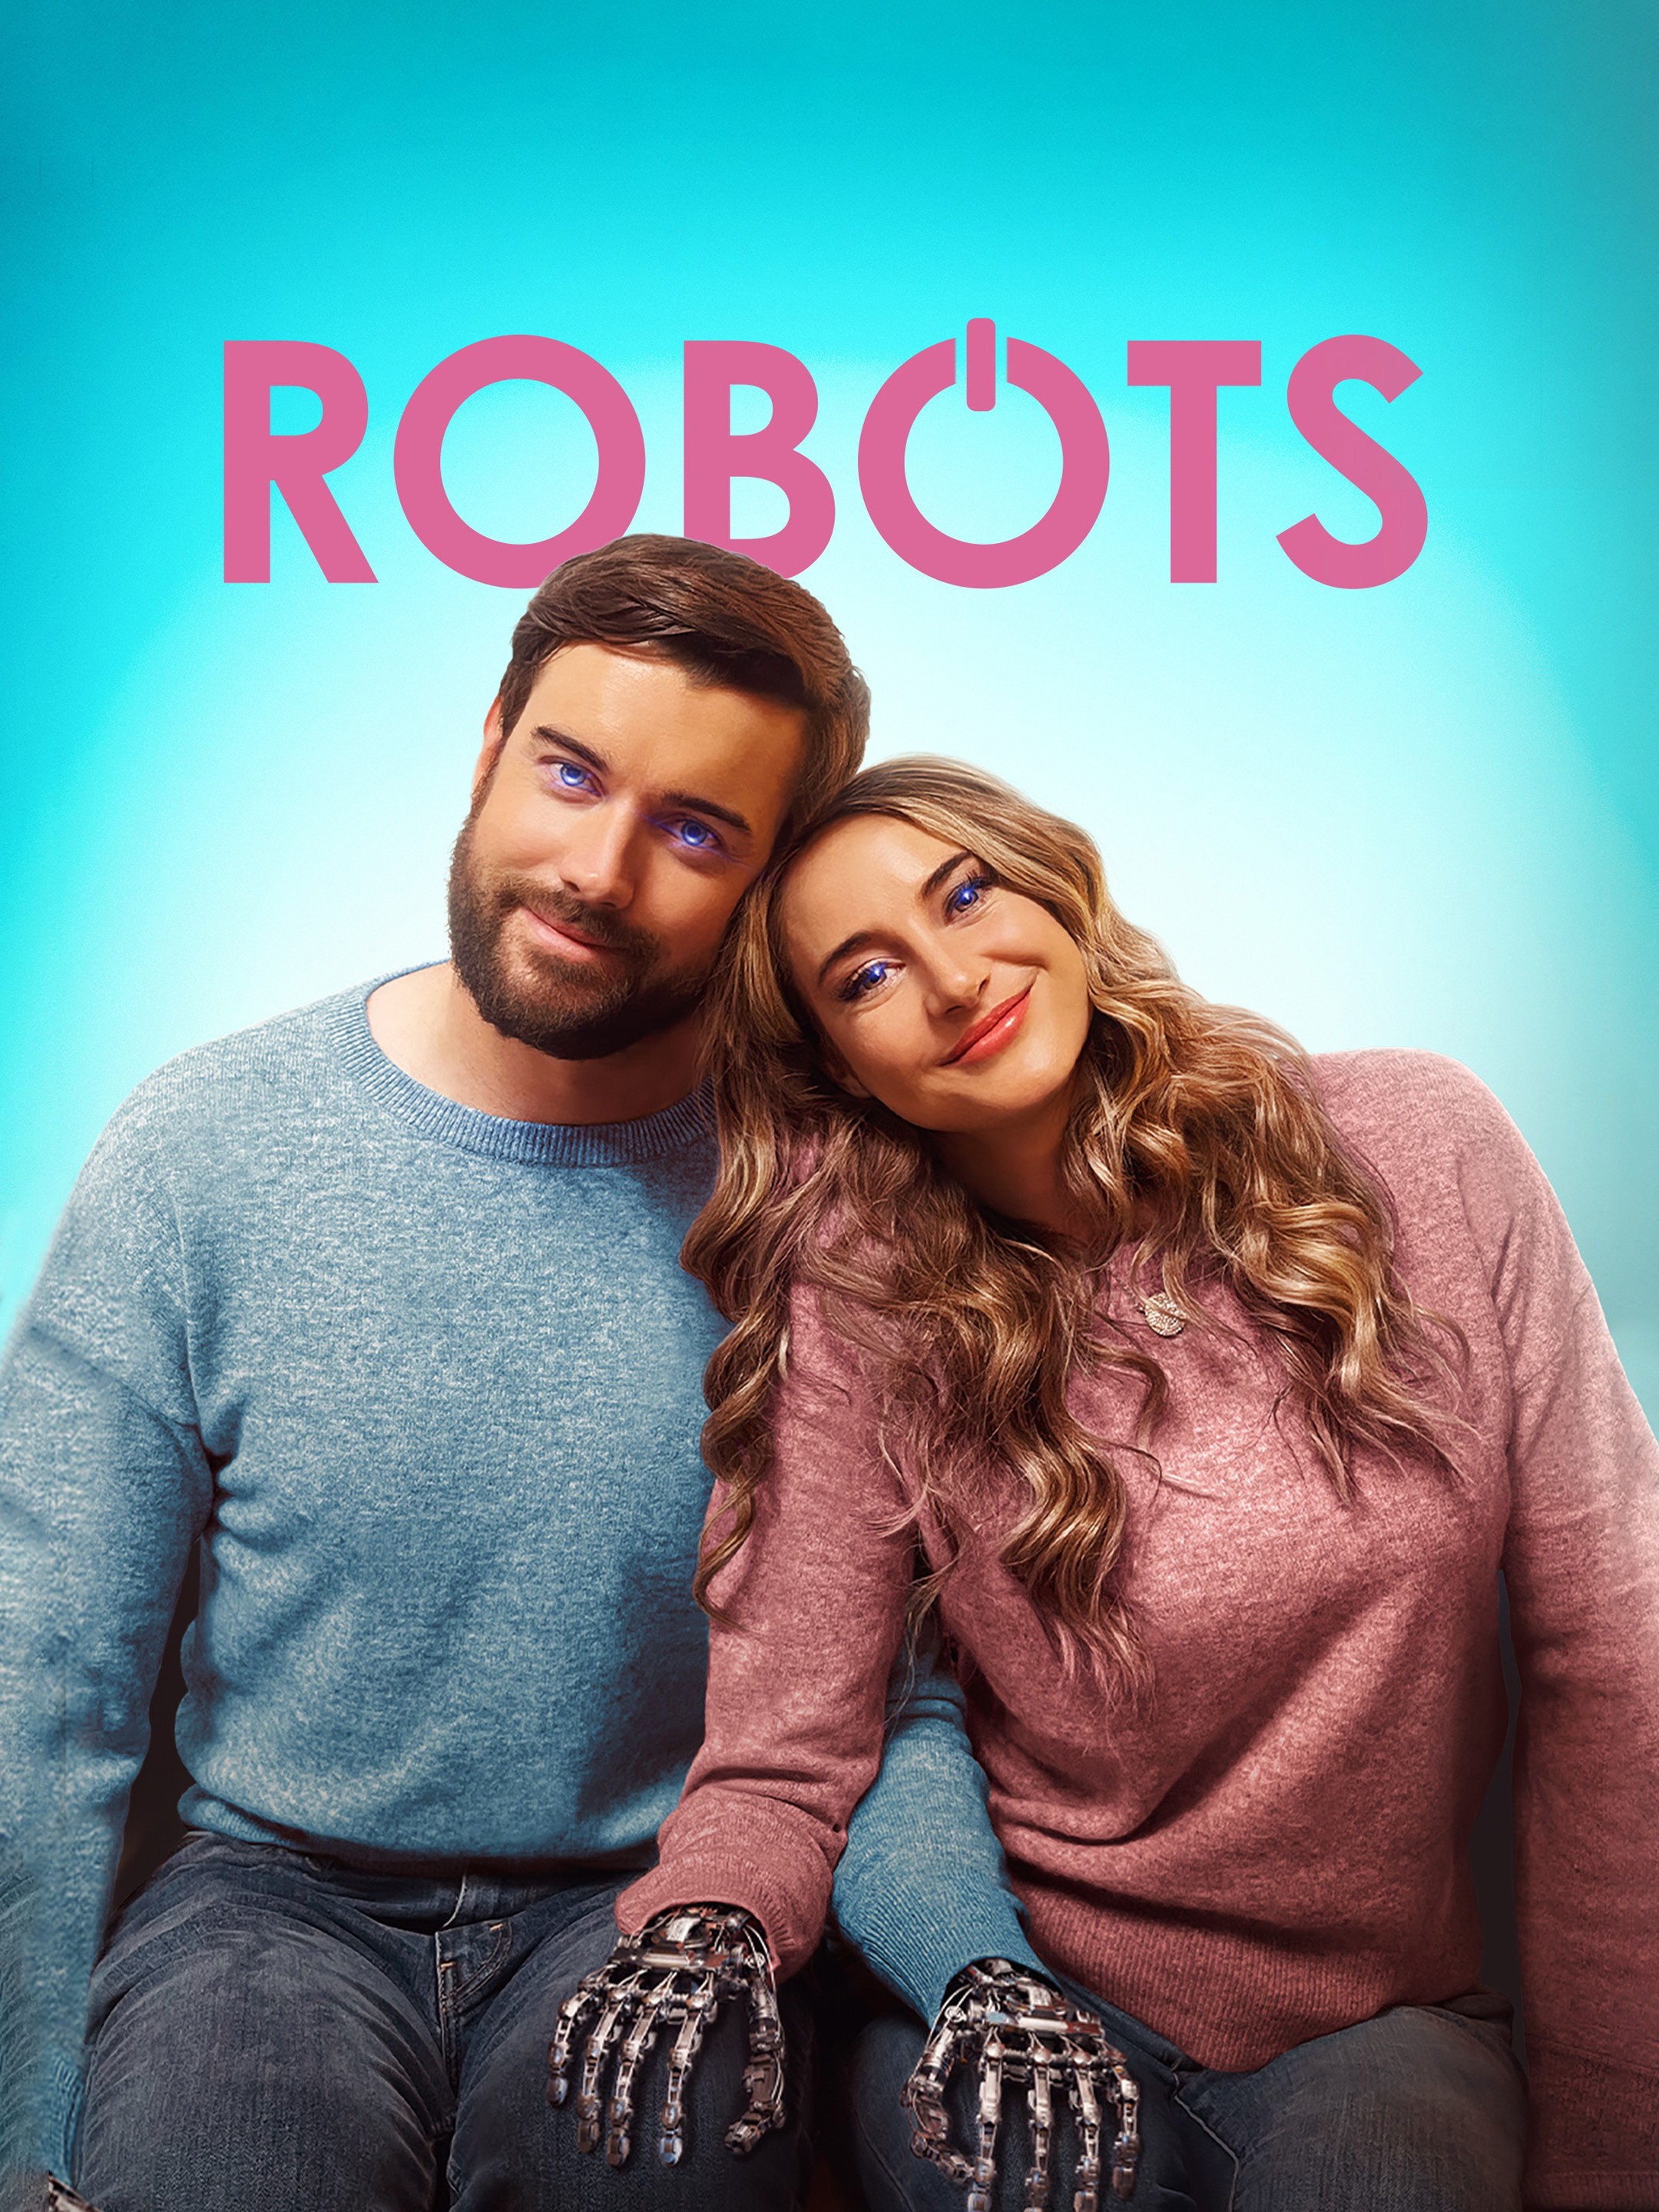 Robot jouet WowWee ROBOSCOOPER - BestofRobots